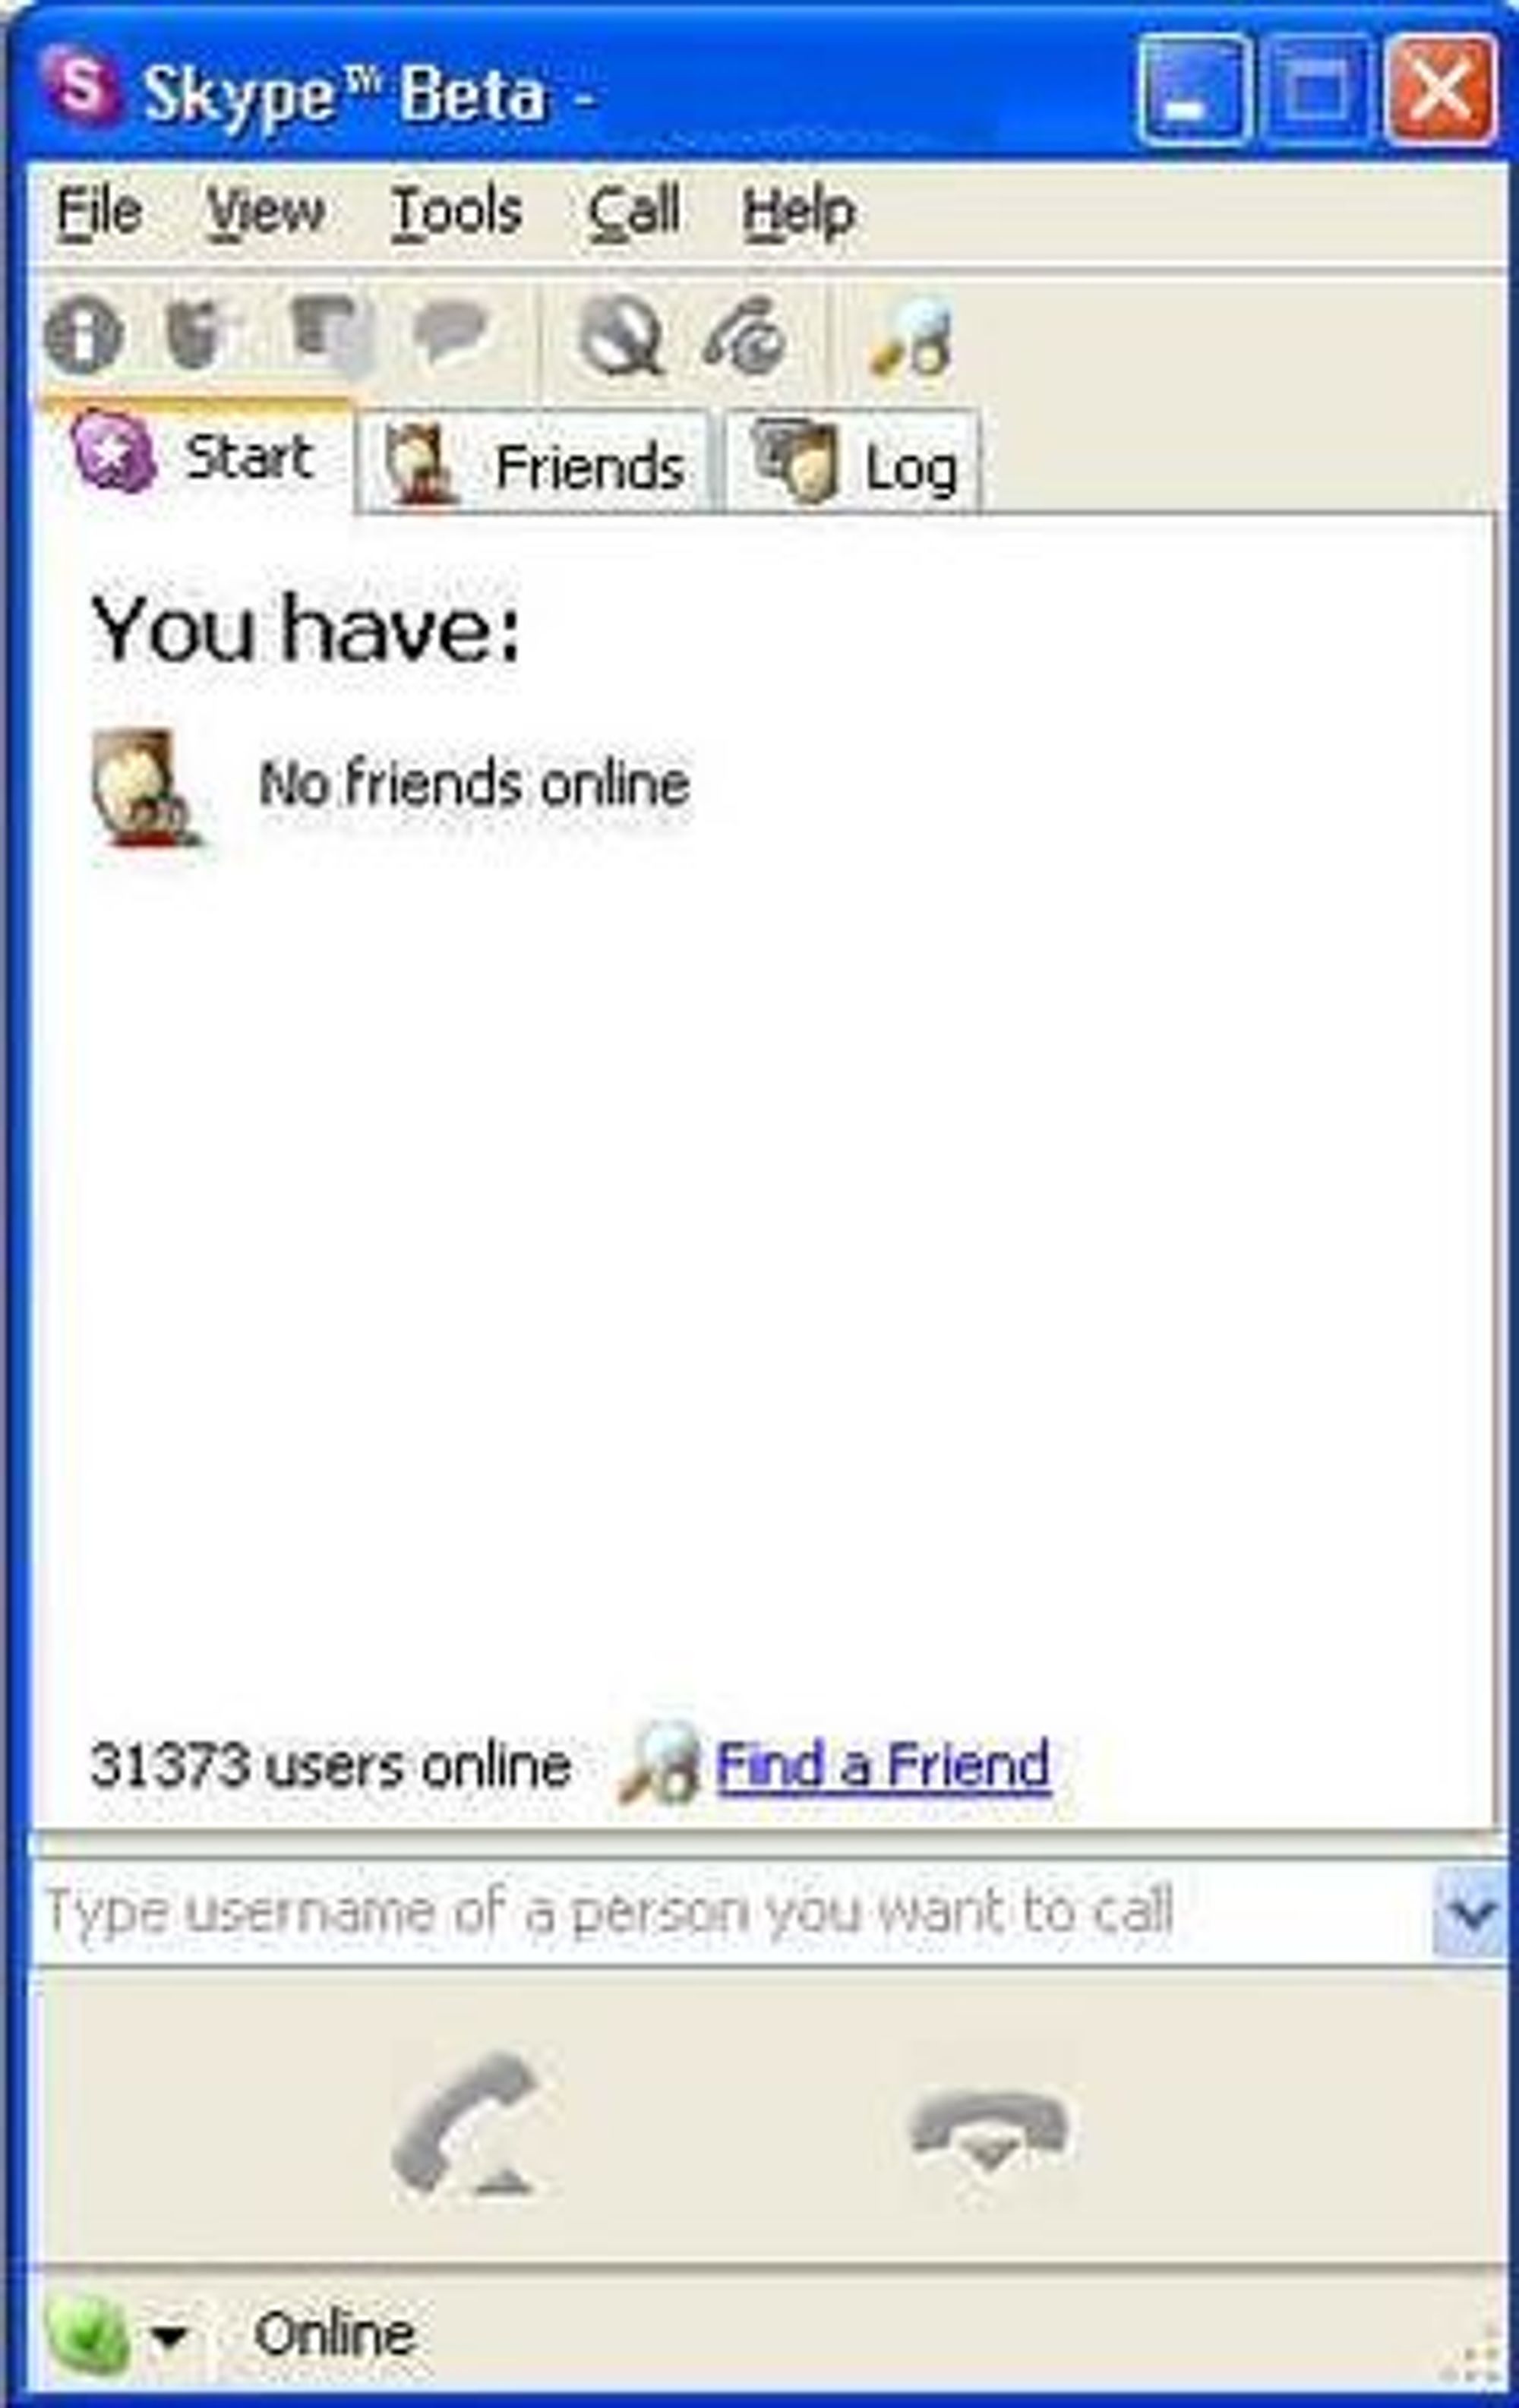 Slik så den første betautgaven av Skype ut da den kom i 2003.